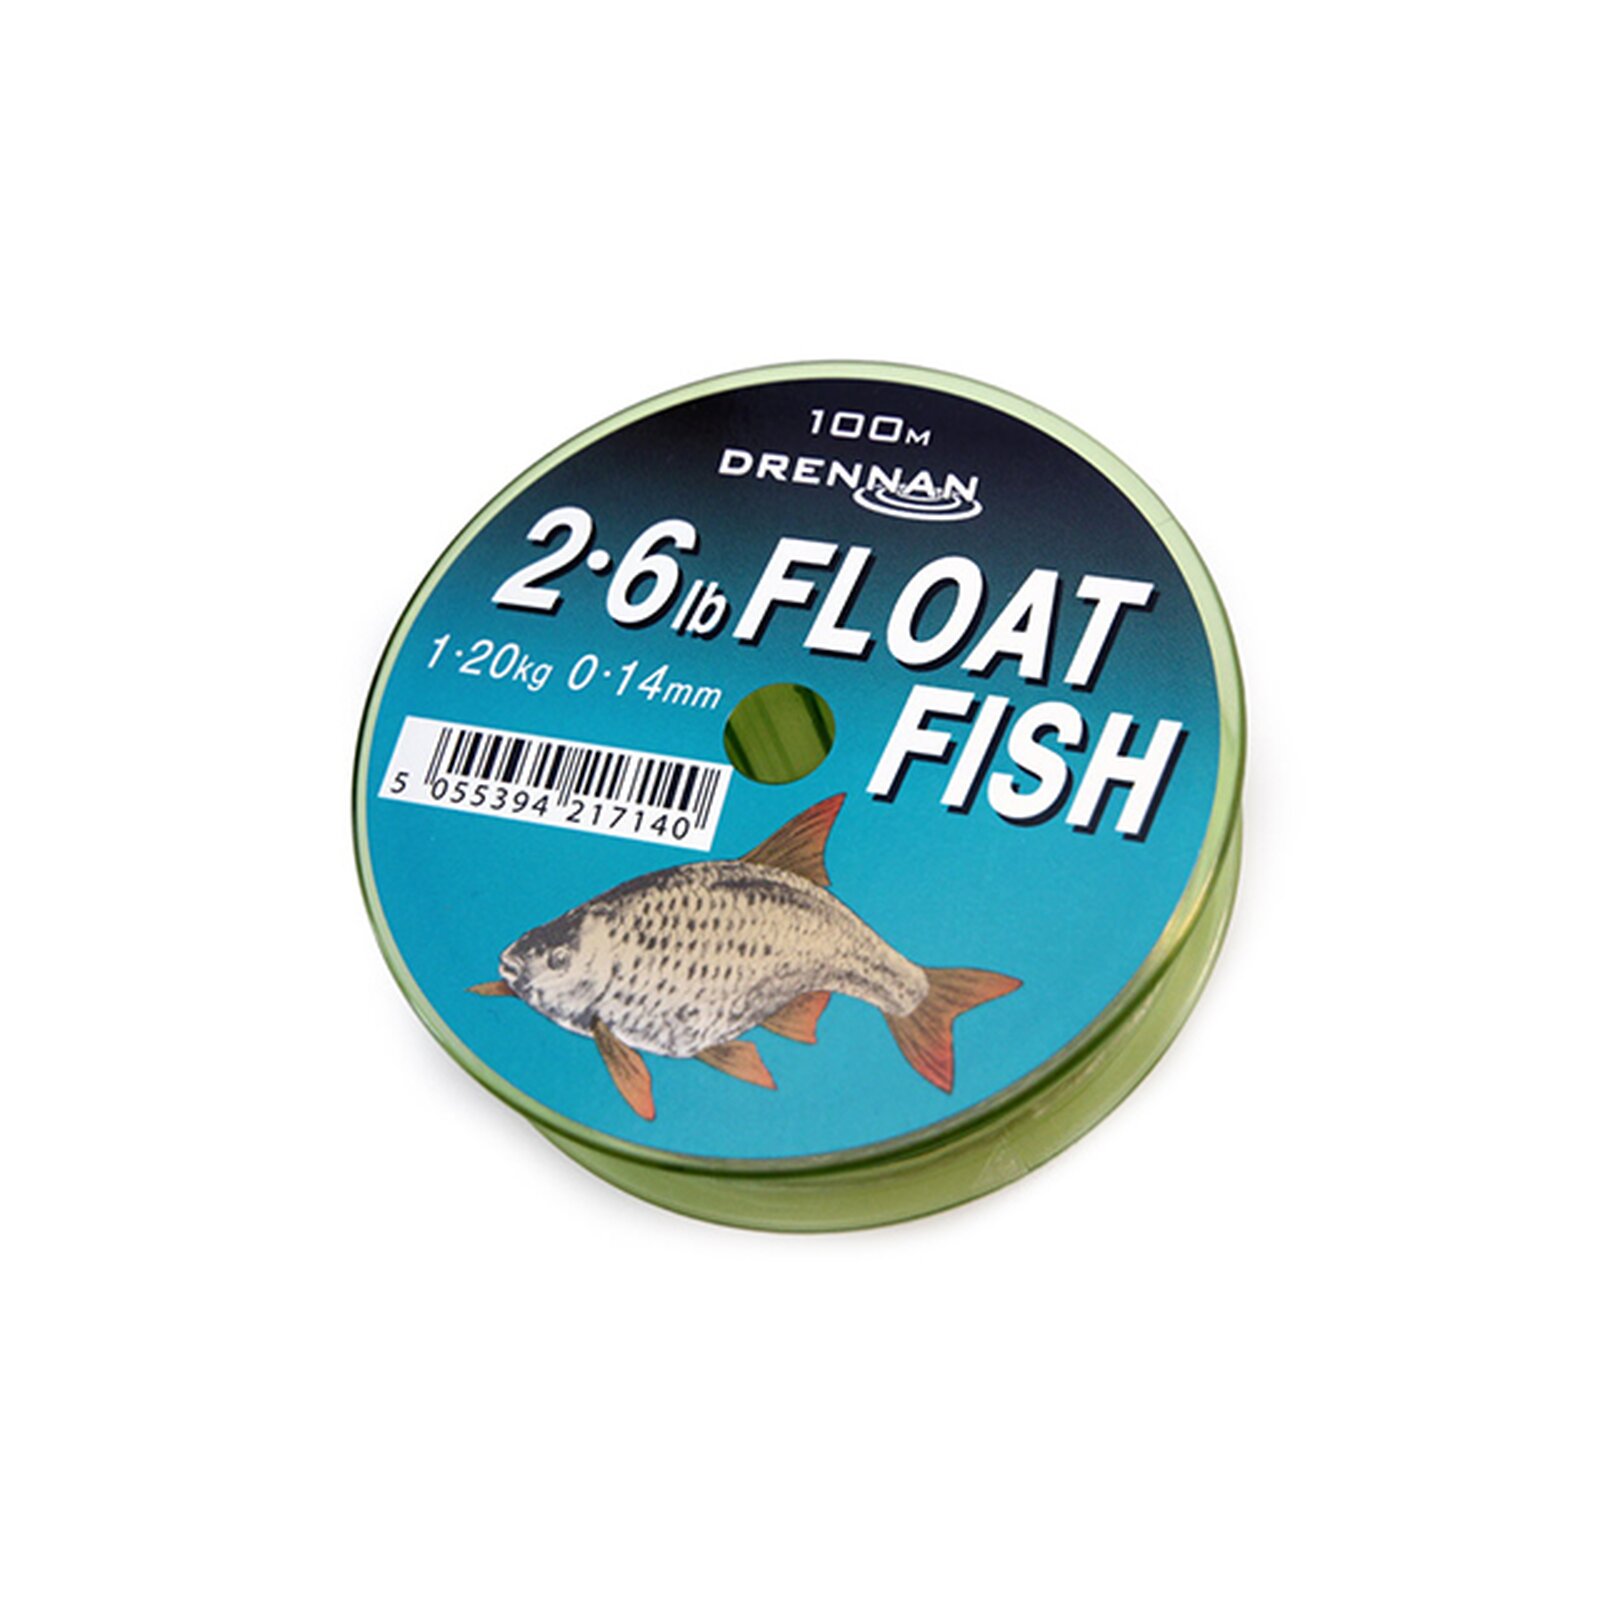 Drennan Float Fish 100m 2,6lb 0,14mm